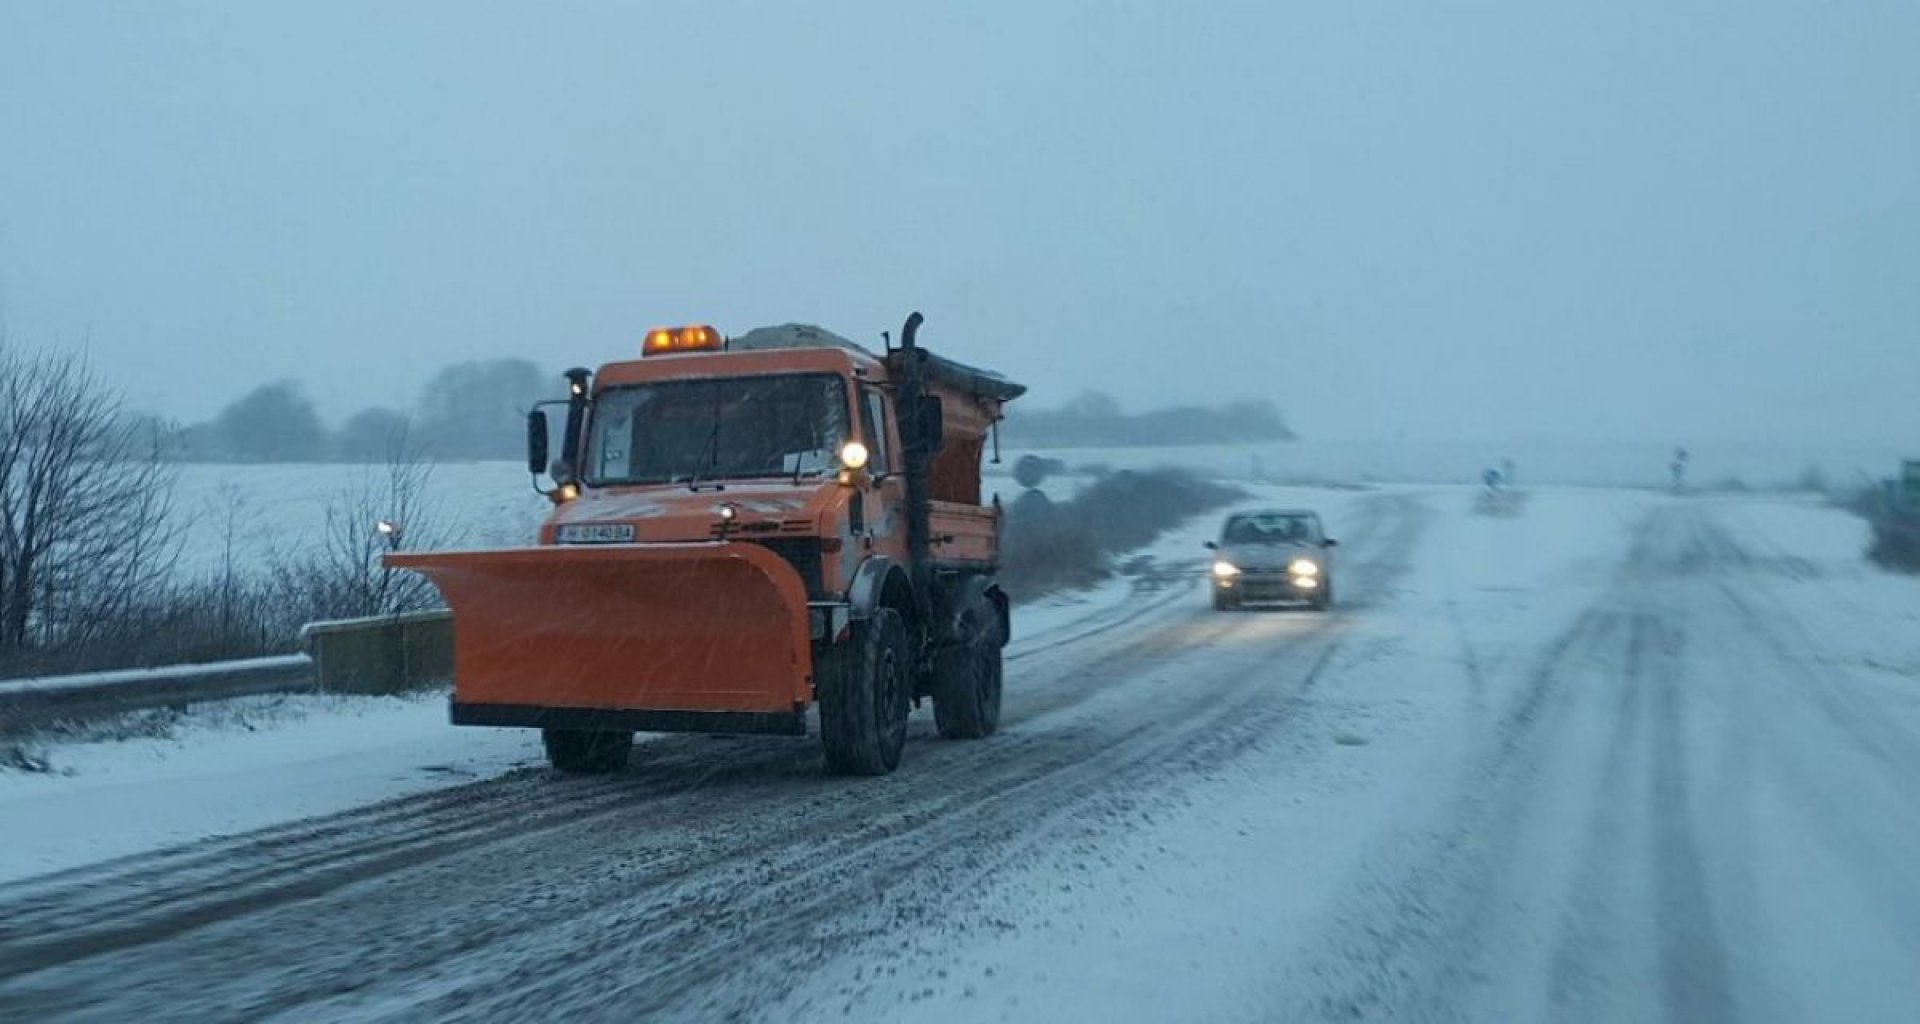 109 снегопочистващи машини обработват пътните настилки в районите със снеговалеж